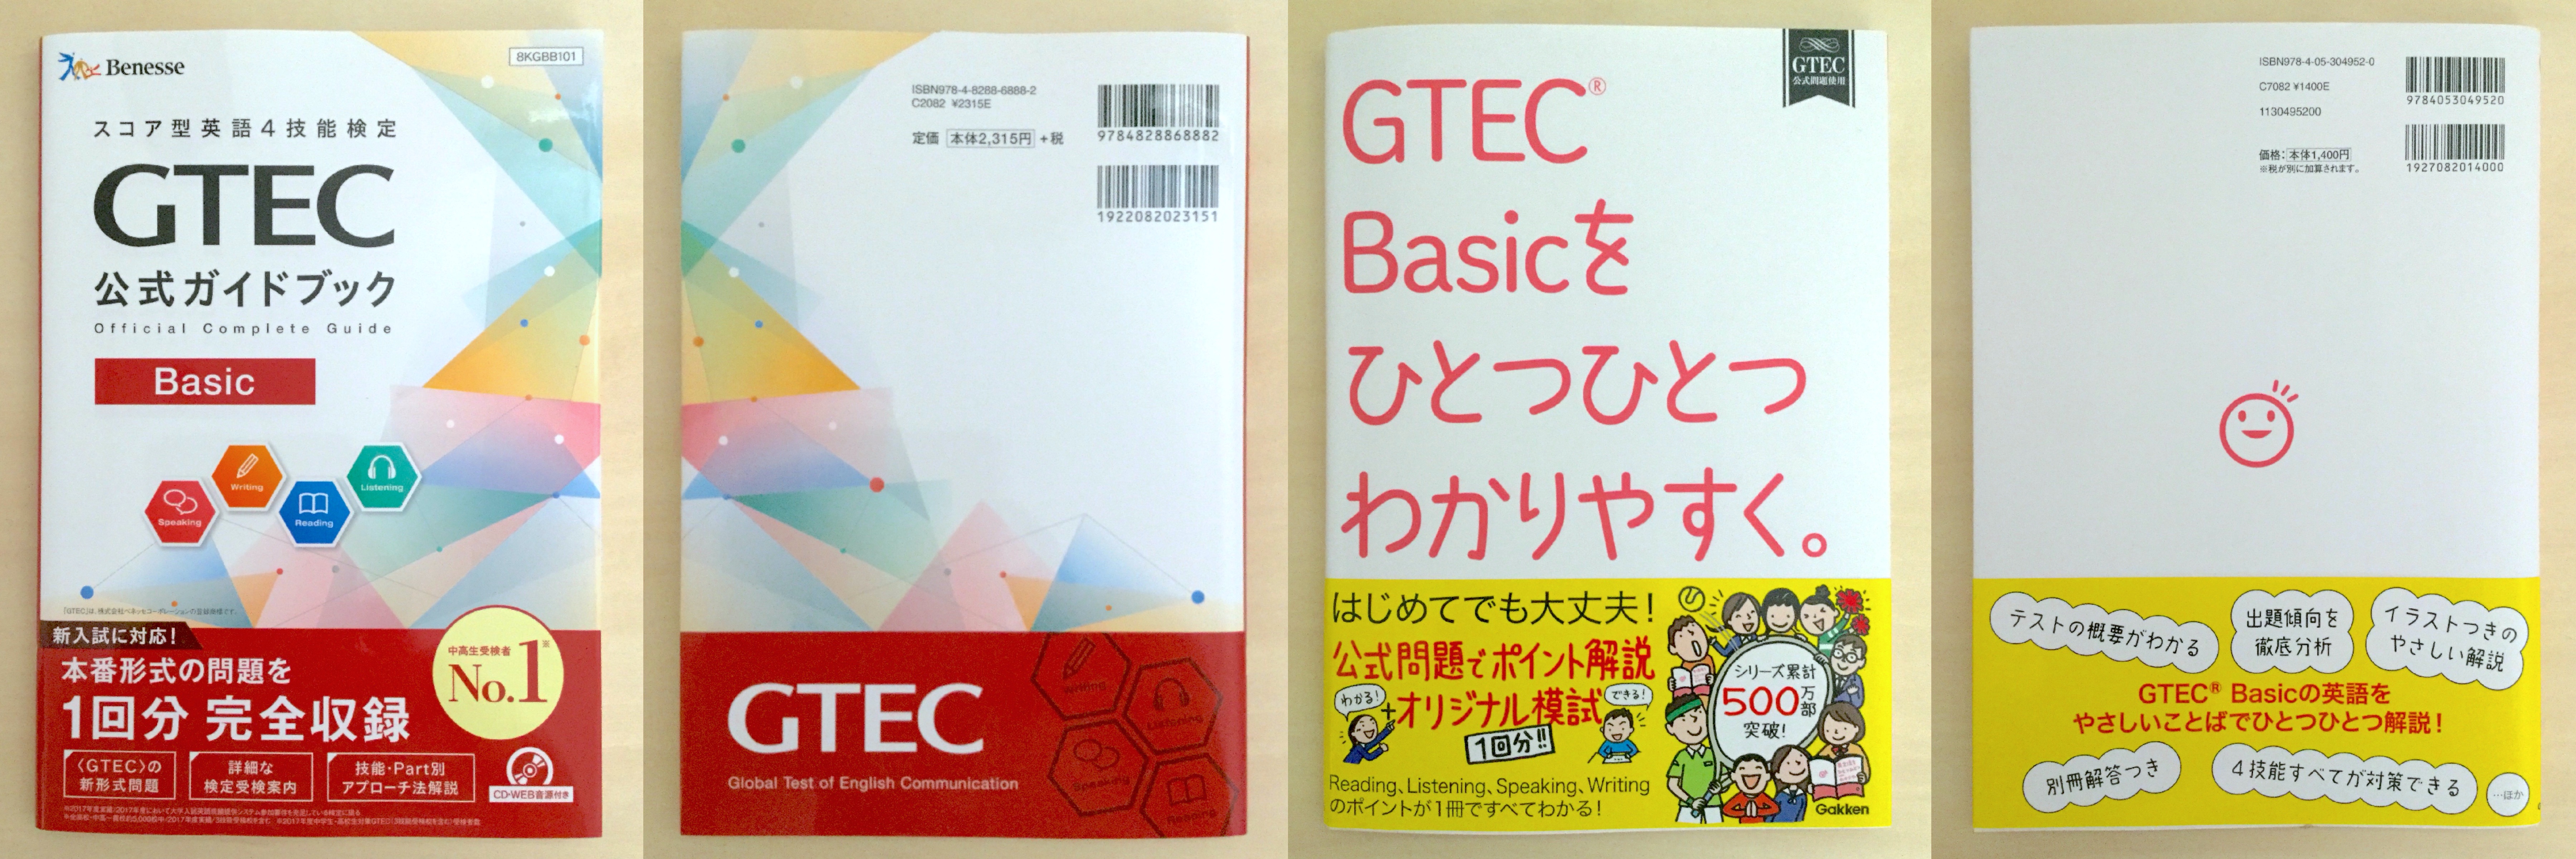 全級合格 Gtec試験 Basicレベル のおすすめ参考書 テキスト 独学勉強法 対策 資格hacker